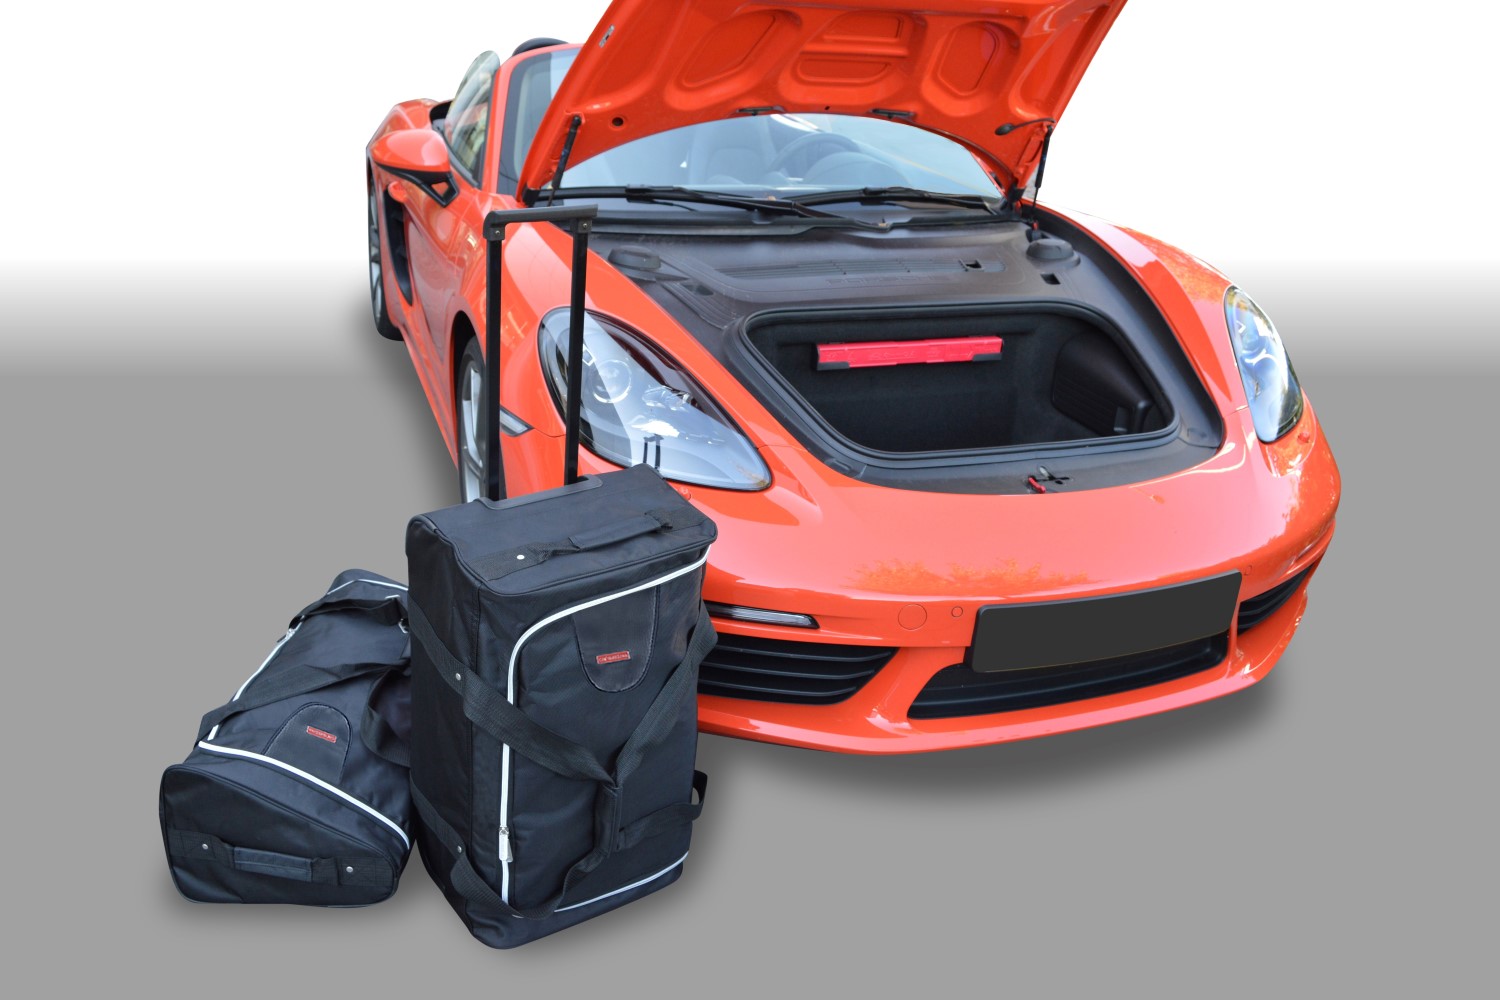 Convencional Gorrión parrilla Comprar Set maletas especifico PORSCHE Cayman / Boxster (718) 2WD + 4WD  2016- coupé / cabrio CAR-BAGS (1x Trolley + 1x Bolsa de mano) a 229,00€ >  Cayman / boxster (718) 2wd +